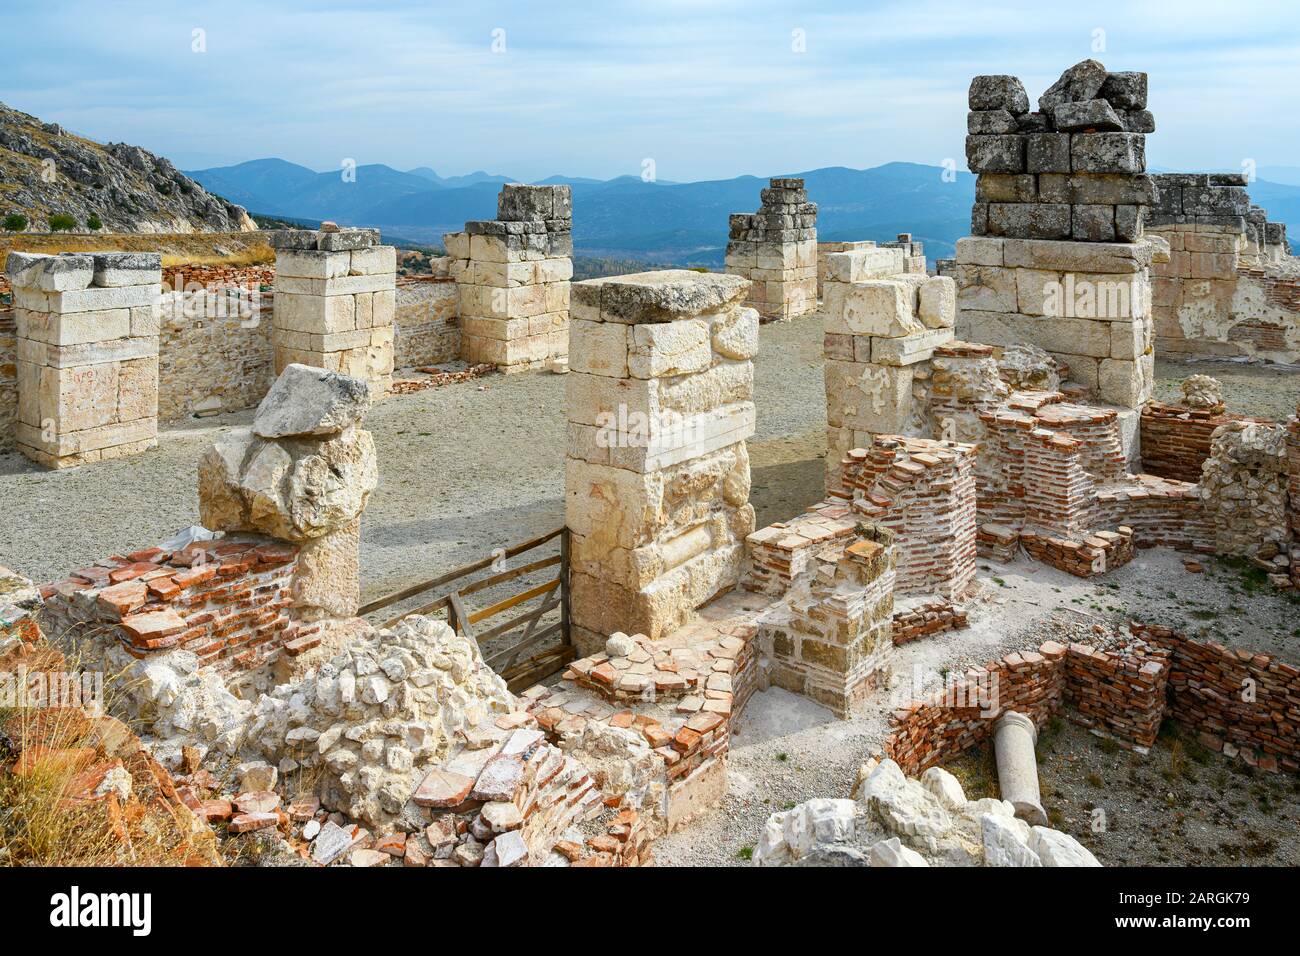 Asien, Türkei, Provinz Burdur, Aglasun, Ausgrabung von Sagalassos, römische Bäder Stock Photo